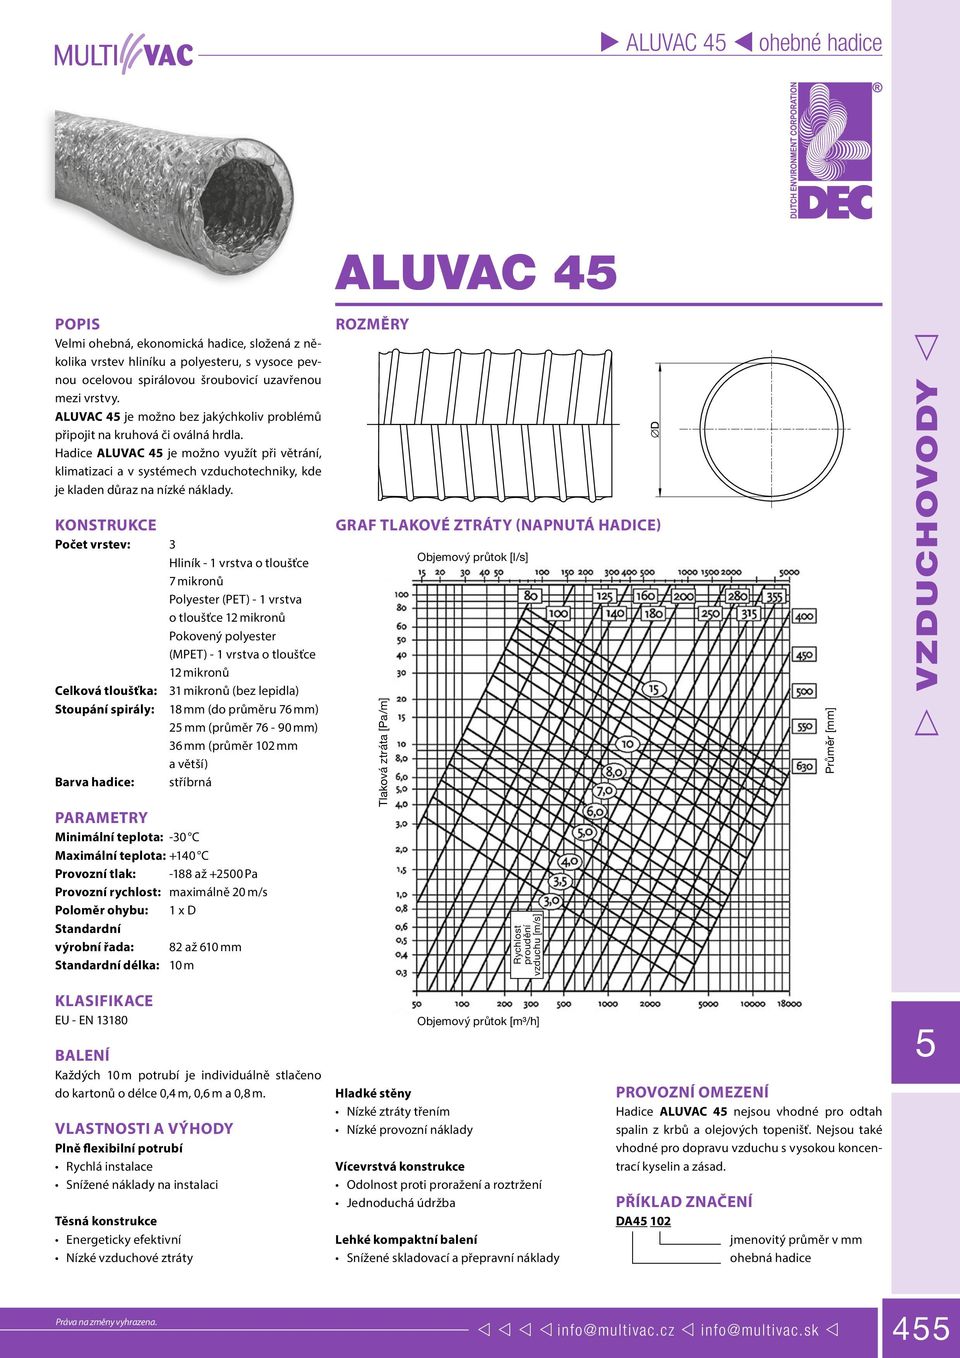 Hadice ALUVAC 4 je možno využít při větrání, klimatizaci a v systémech vzduchotechniky, kde je kladen důraz na nízké náklady.